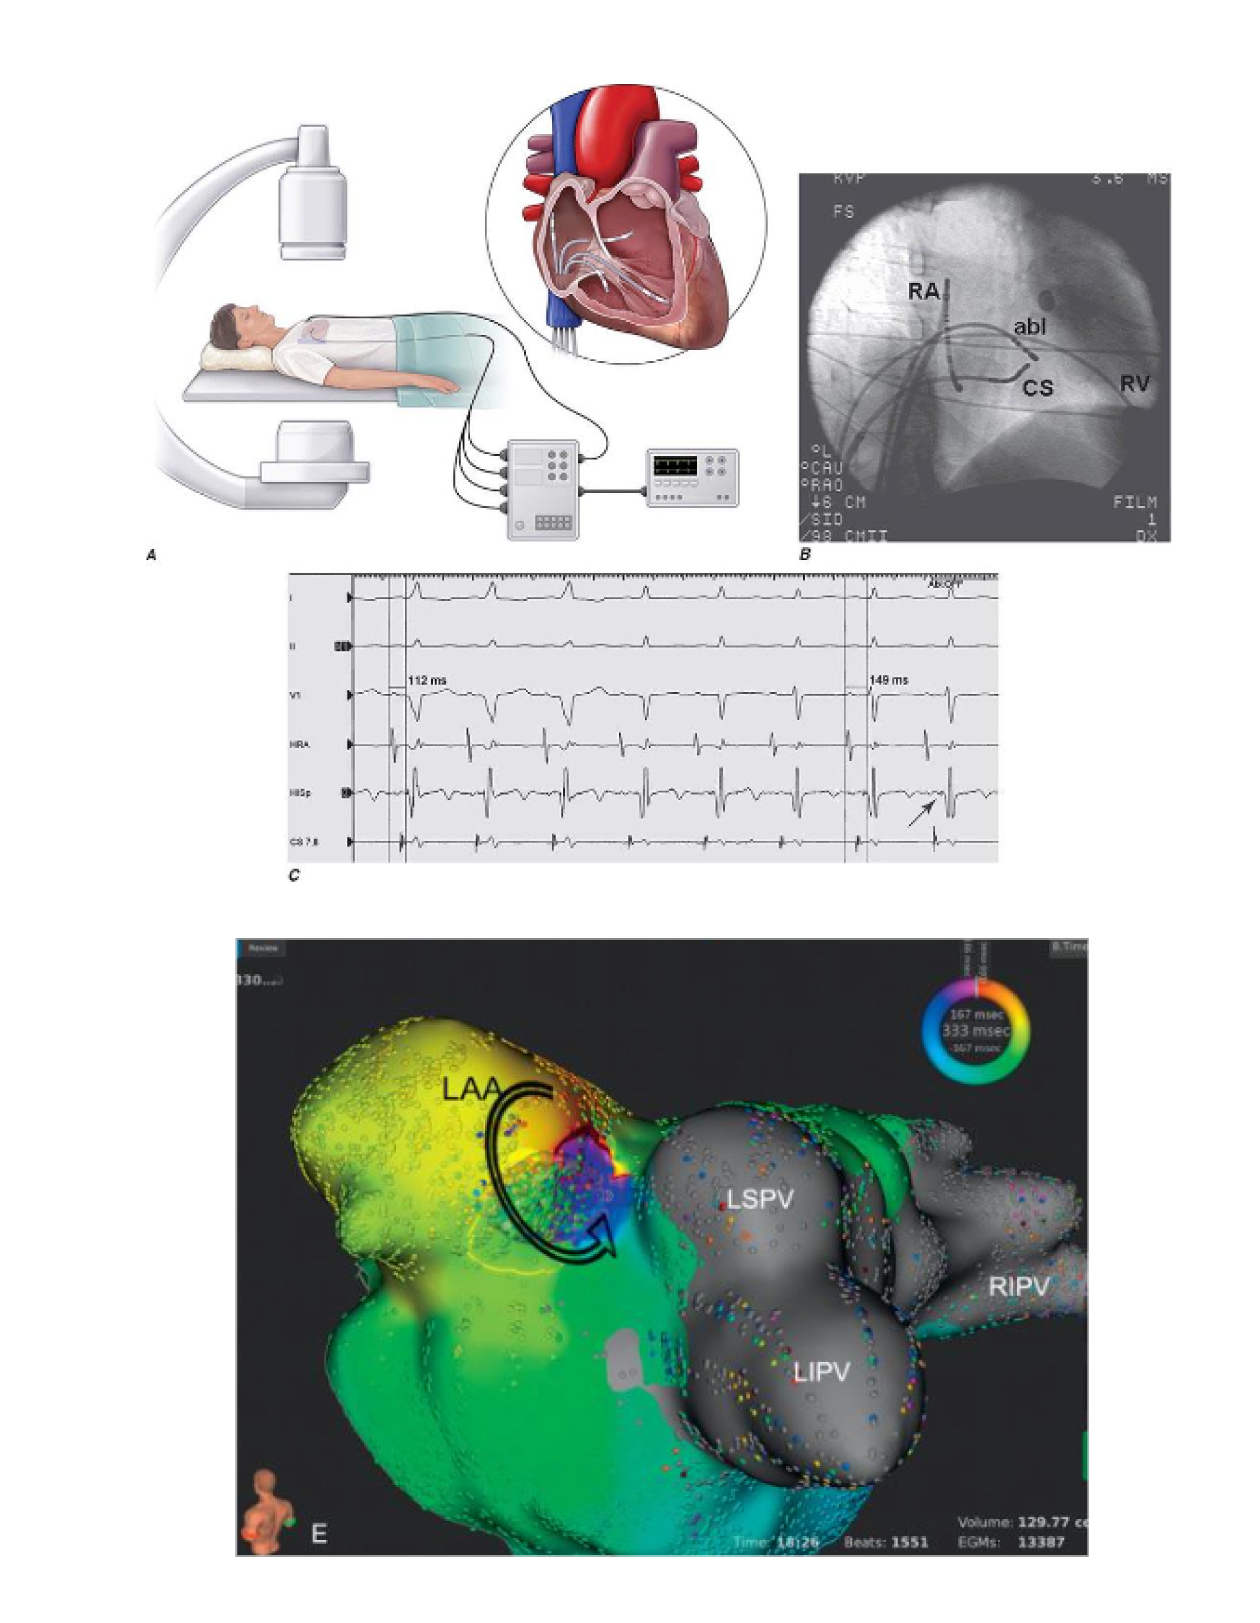 Fig 1 
A: Posizionamento degli elettrodi nelle cavità cardiache inserendoli in sede inguinale 
B: Posizionamento degli elettrodi nelle cavità cardiache immagine radiologica
C: Segnali elettrici registrati mediante gli elettrodi intracardiaci in corso di una aritmia 
D: Mappa elettroanatomica: si visualizza la camera cardiaca ove ha origine la aritmia .I diversi colori indicano il percorso della aritmia